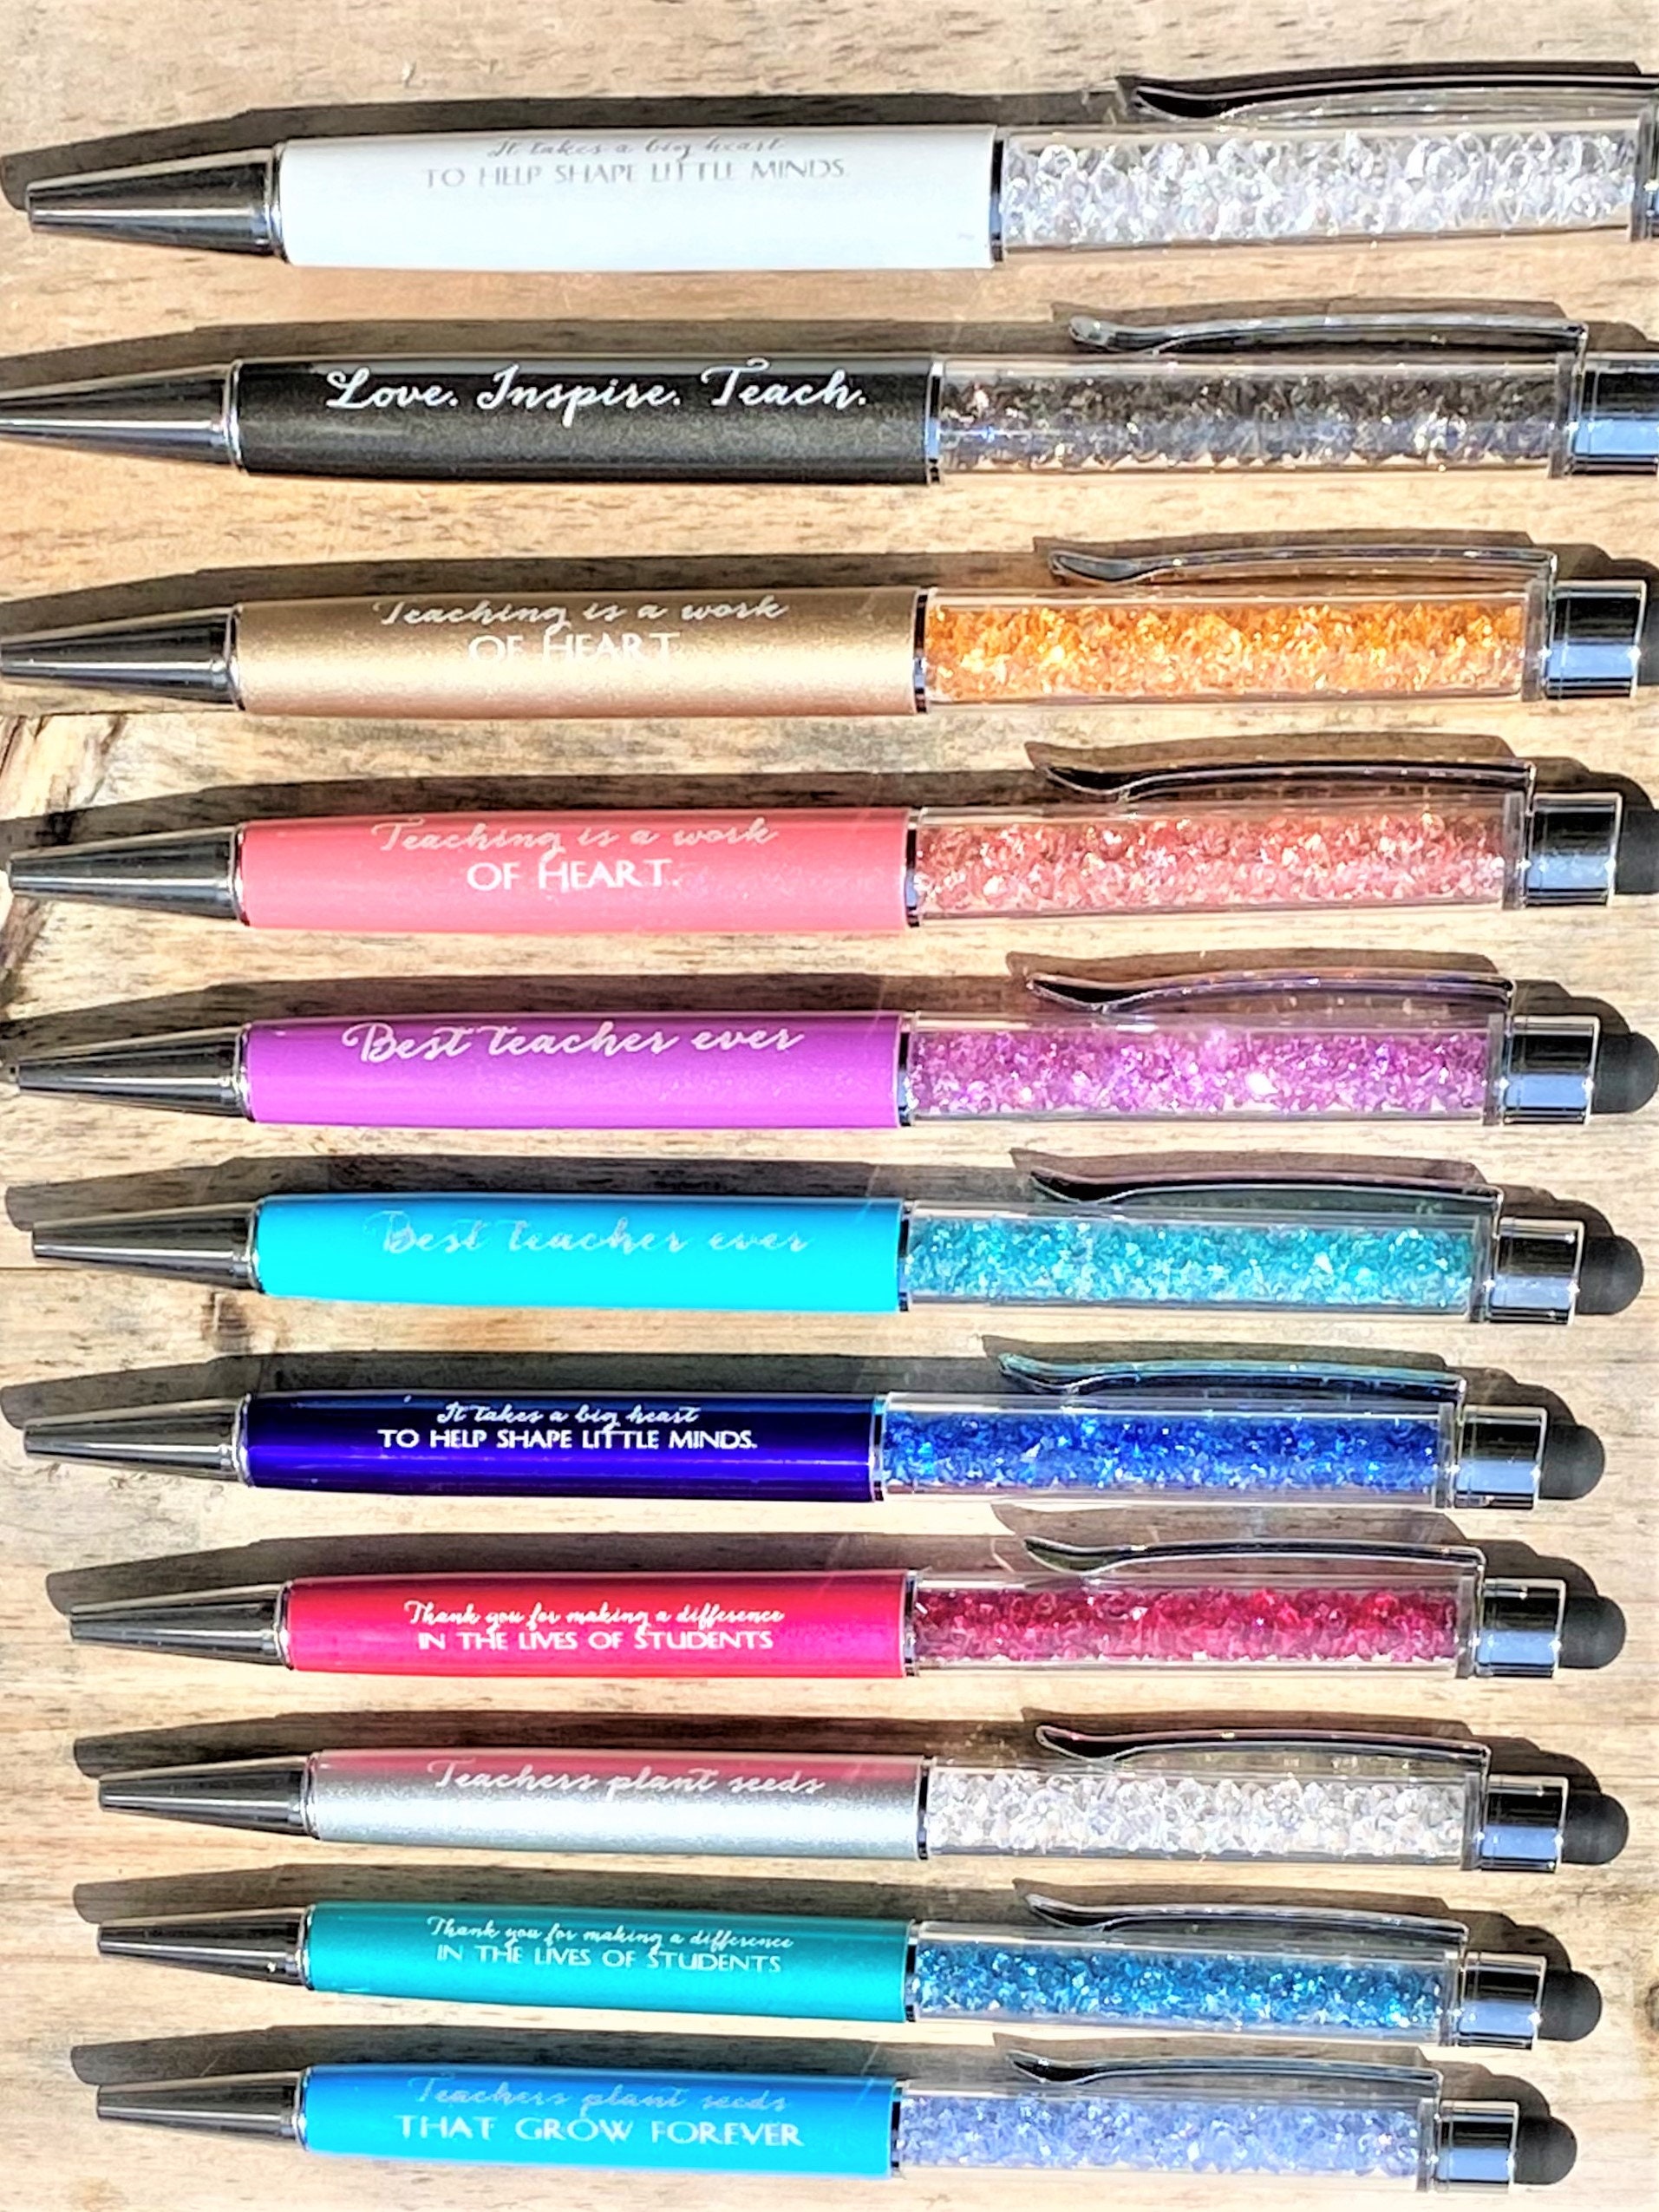 Colorful Pens, Gift for Kids, Gift for Teacher, Pentel RSVP Glitter Pen,  Gift for Tween, Christmas Gift for Teacher, Stocking Stuffer For 